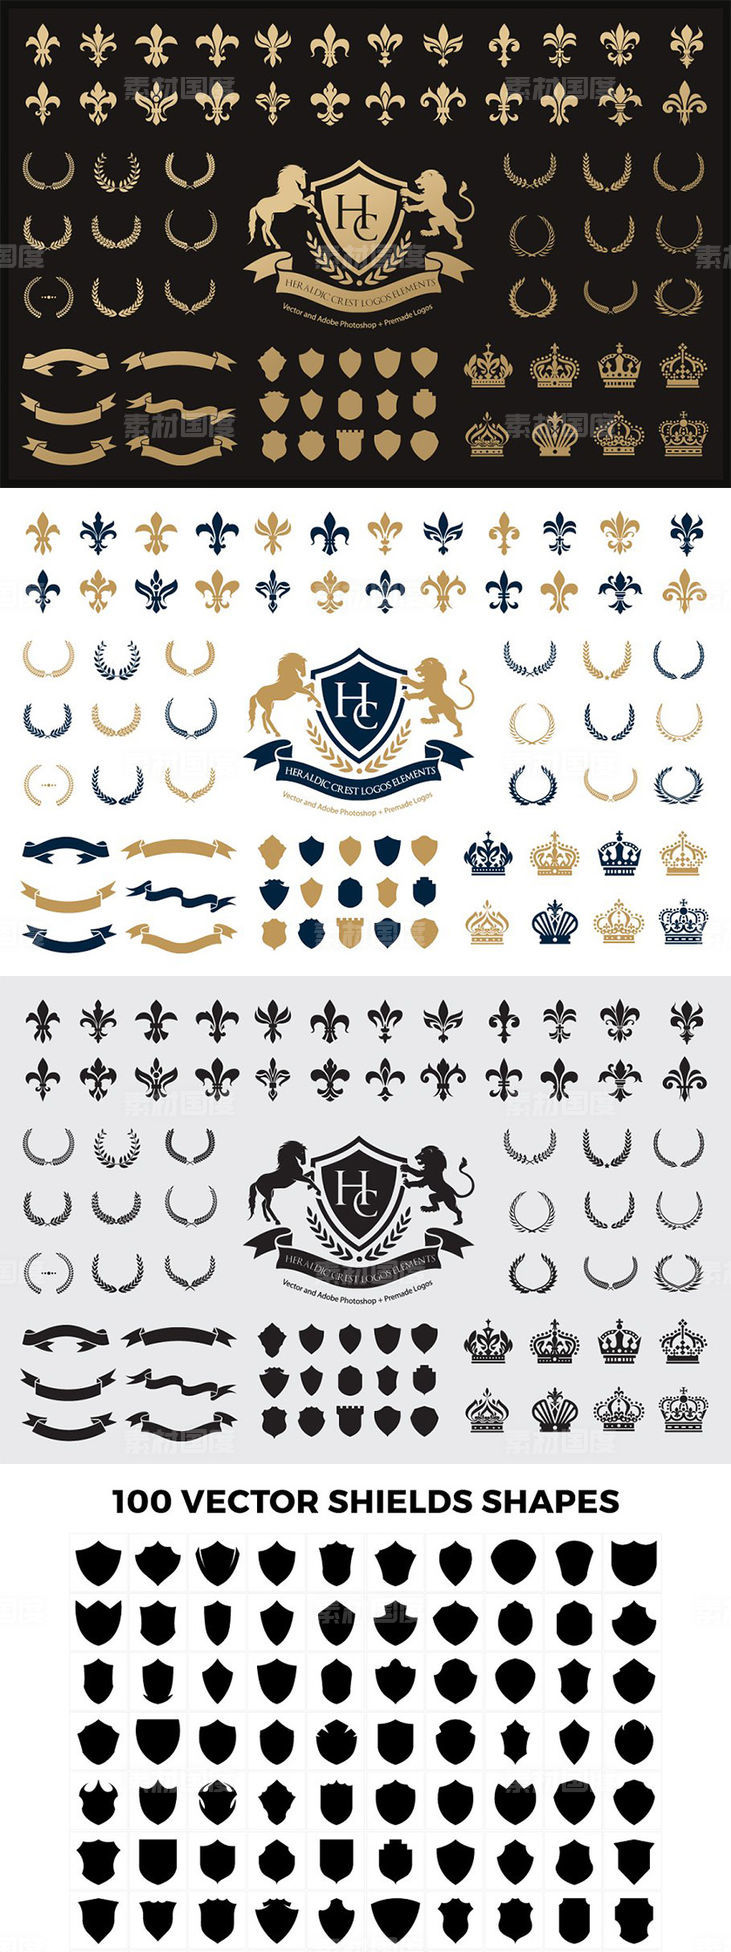 奢侈花边纹章徽标设计组成套件 Heraldic Crest Logos elements set